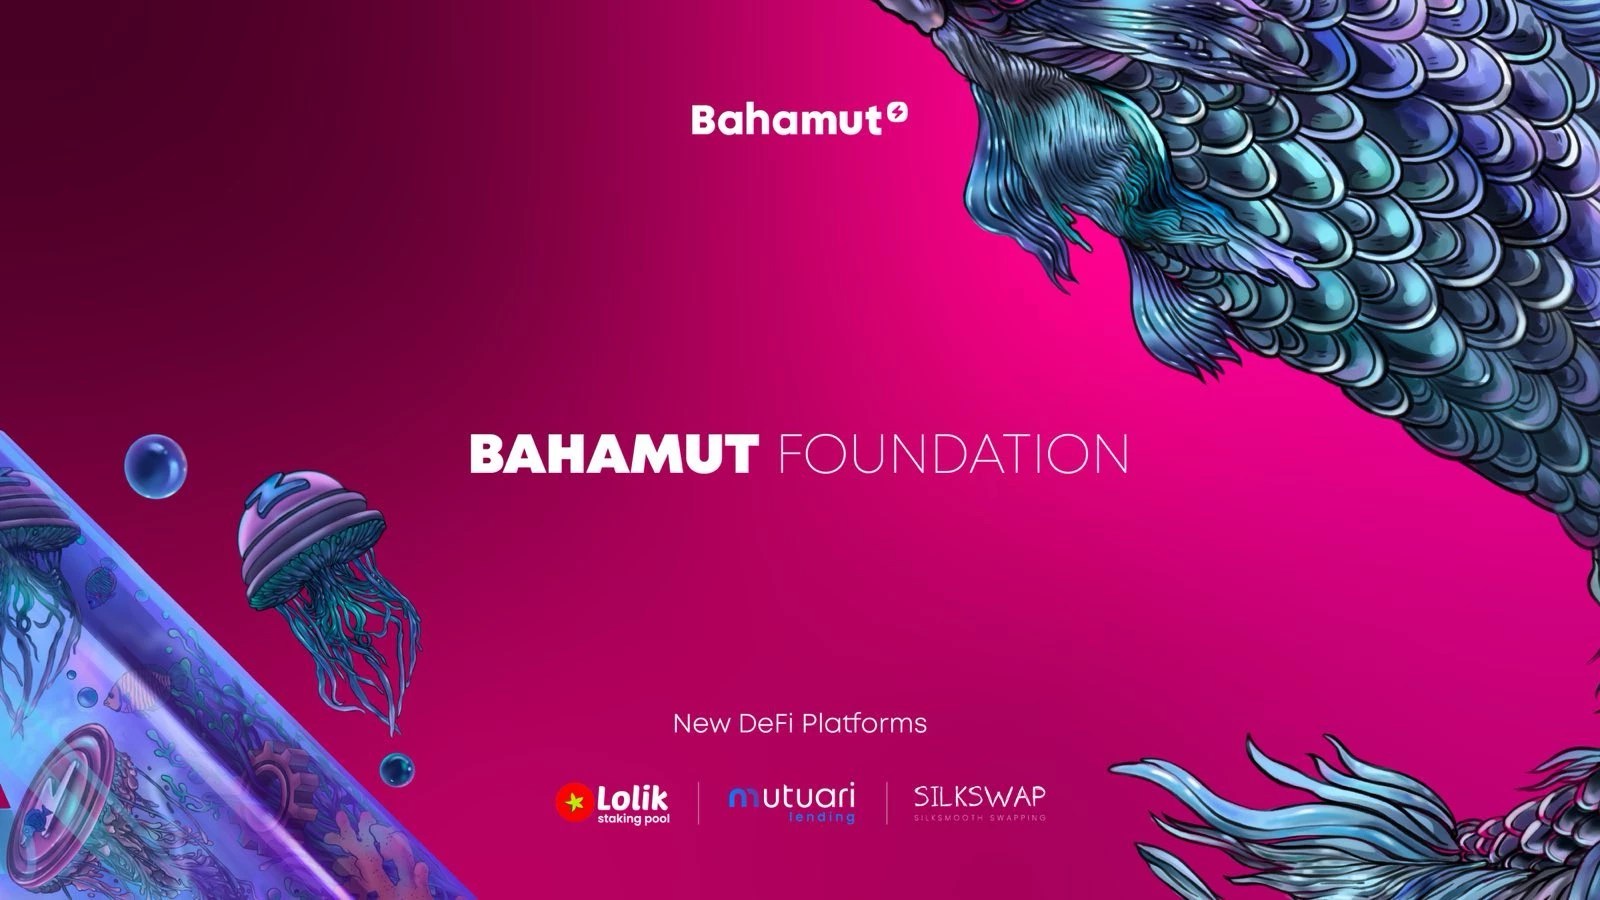 A Fundação Bahamut anuncia o lançamento bem-sucedido de 3 projetos DeFi em Bahamut e a lista aprovada dos vencedores iniciais da Bahamut Arena